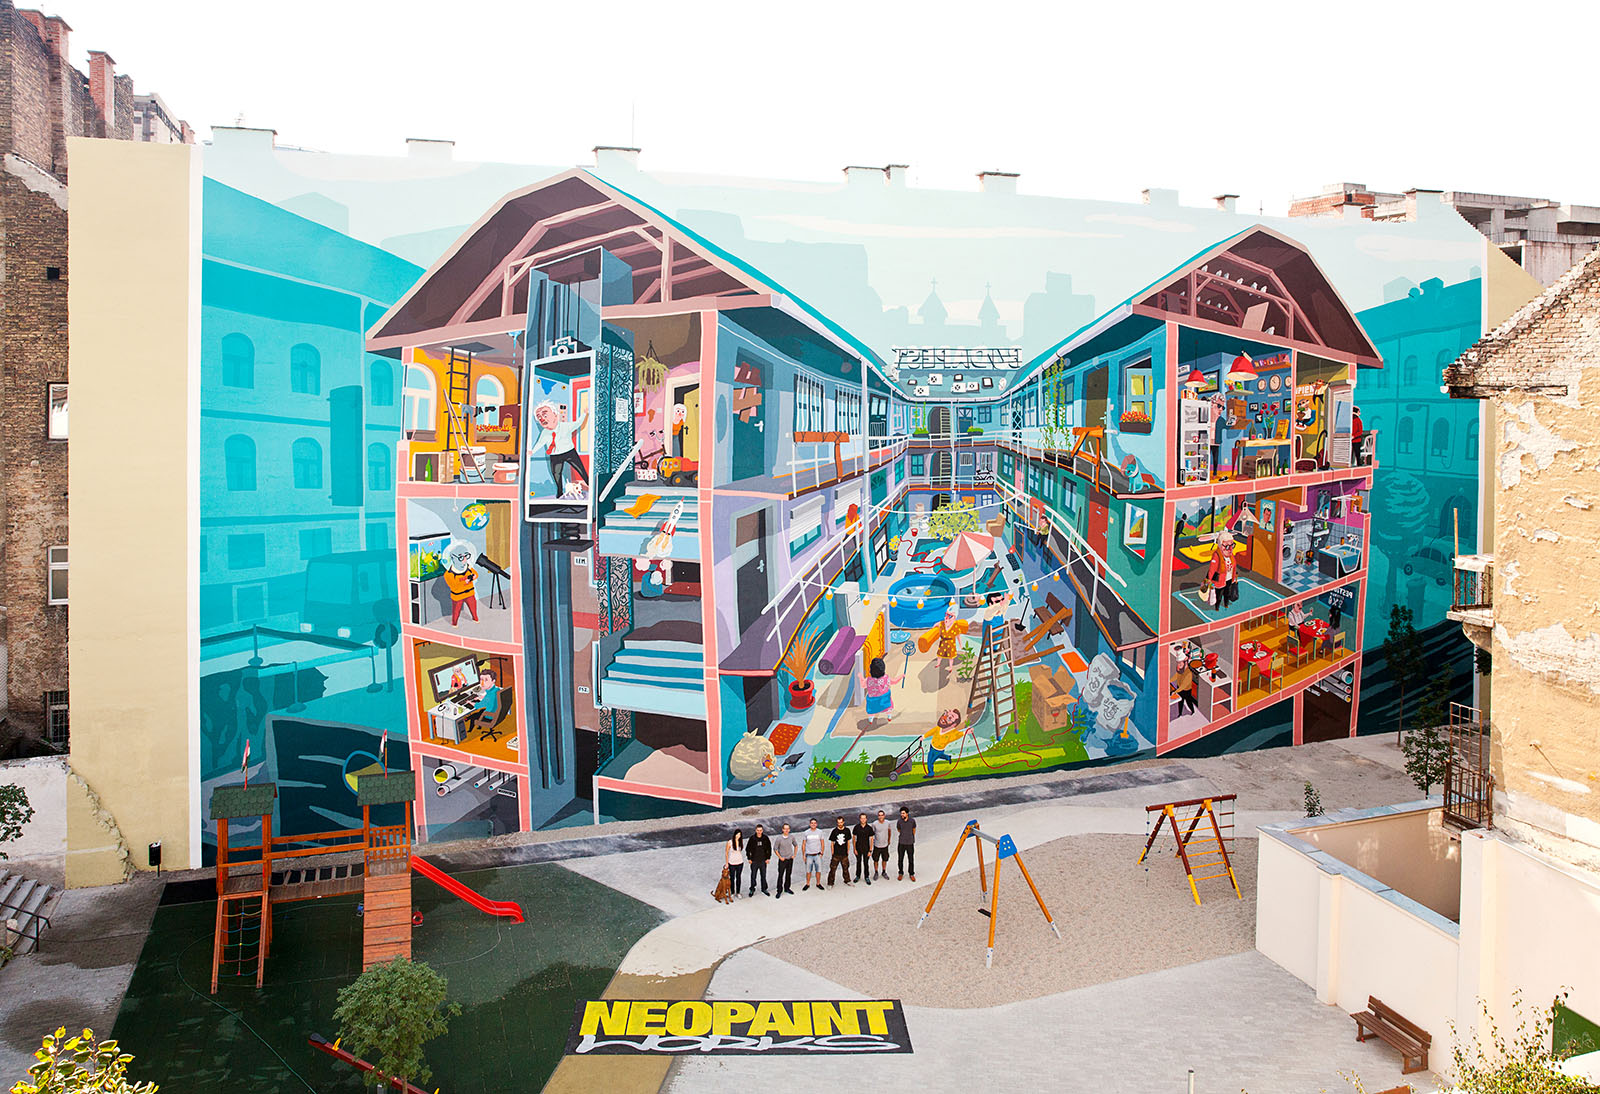 neopaint works - tűzfalfestés - falfestmény - dekorációs festés - graffiti (12)